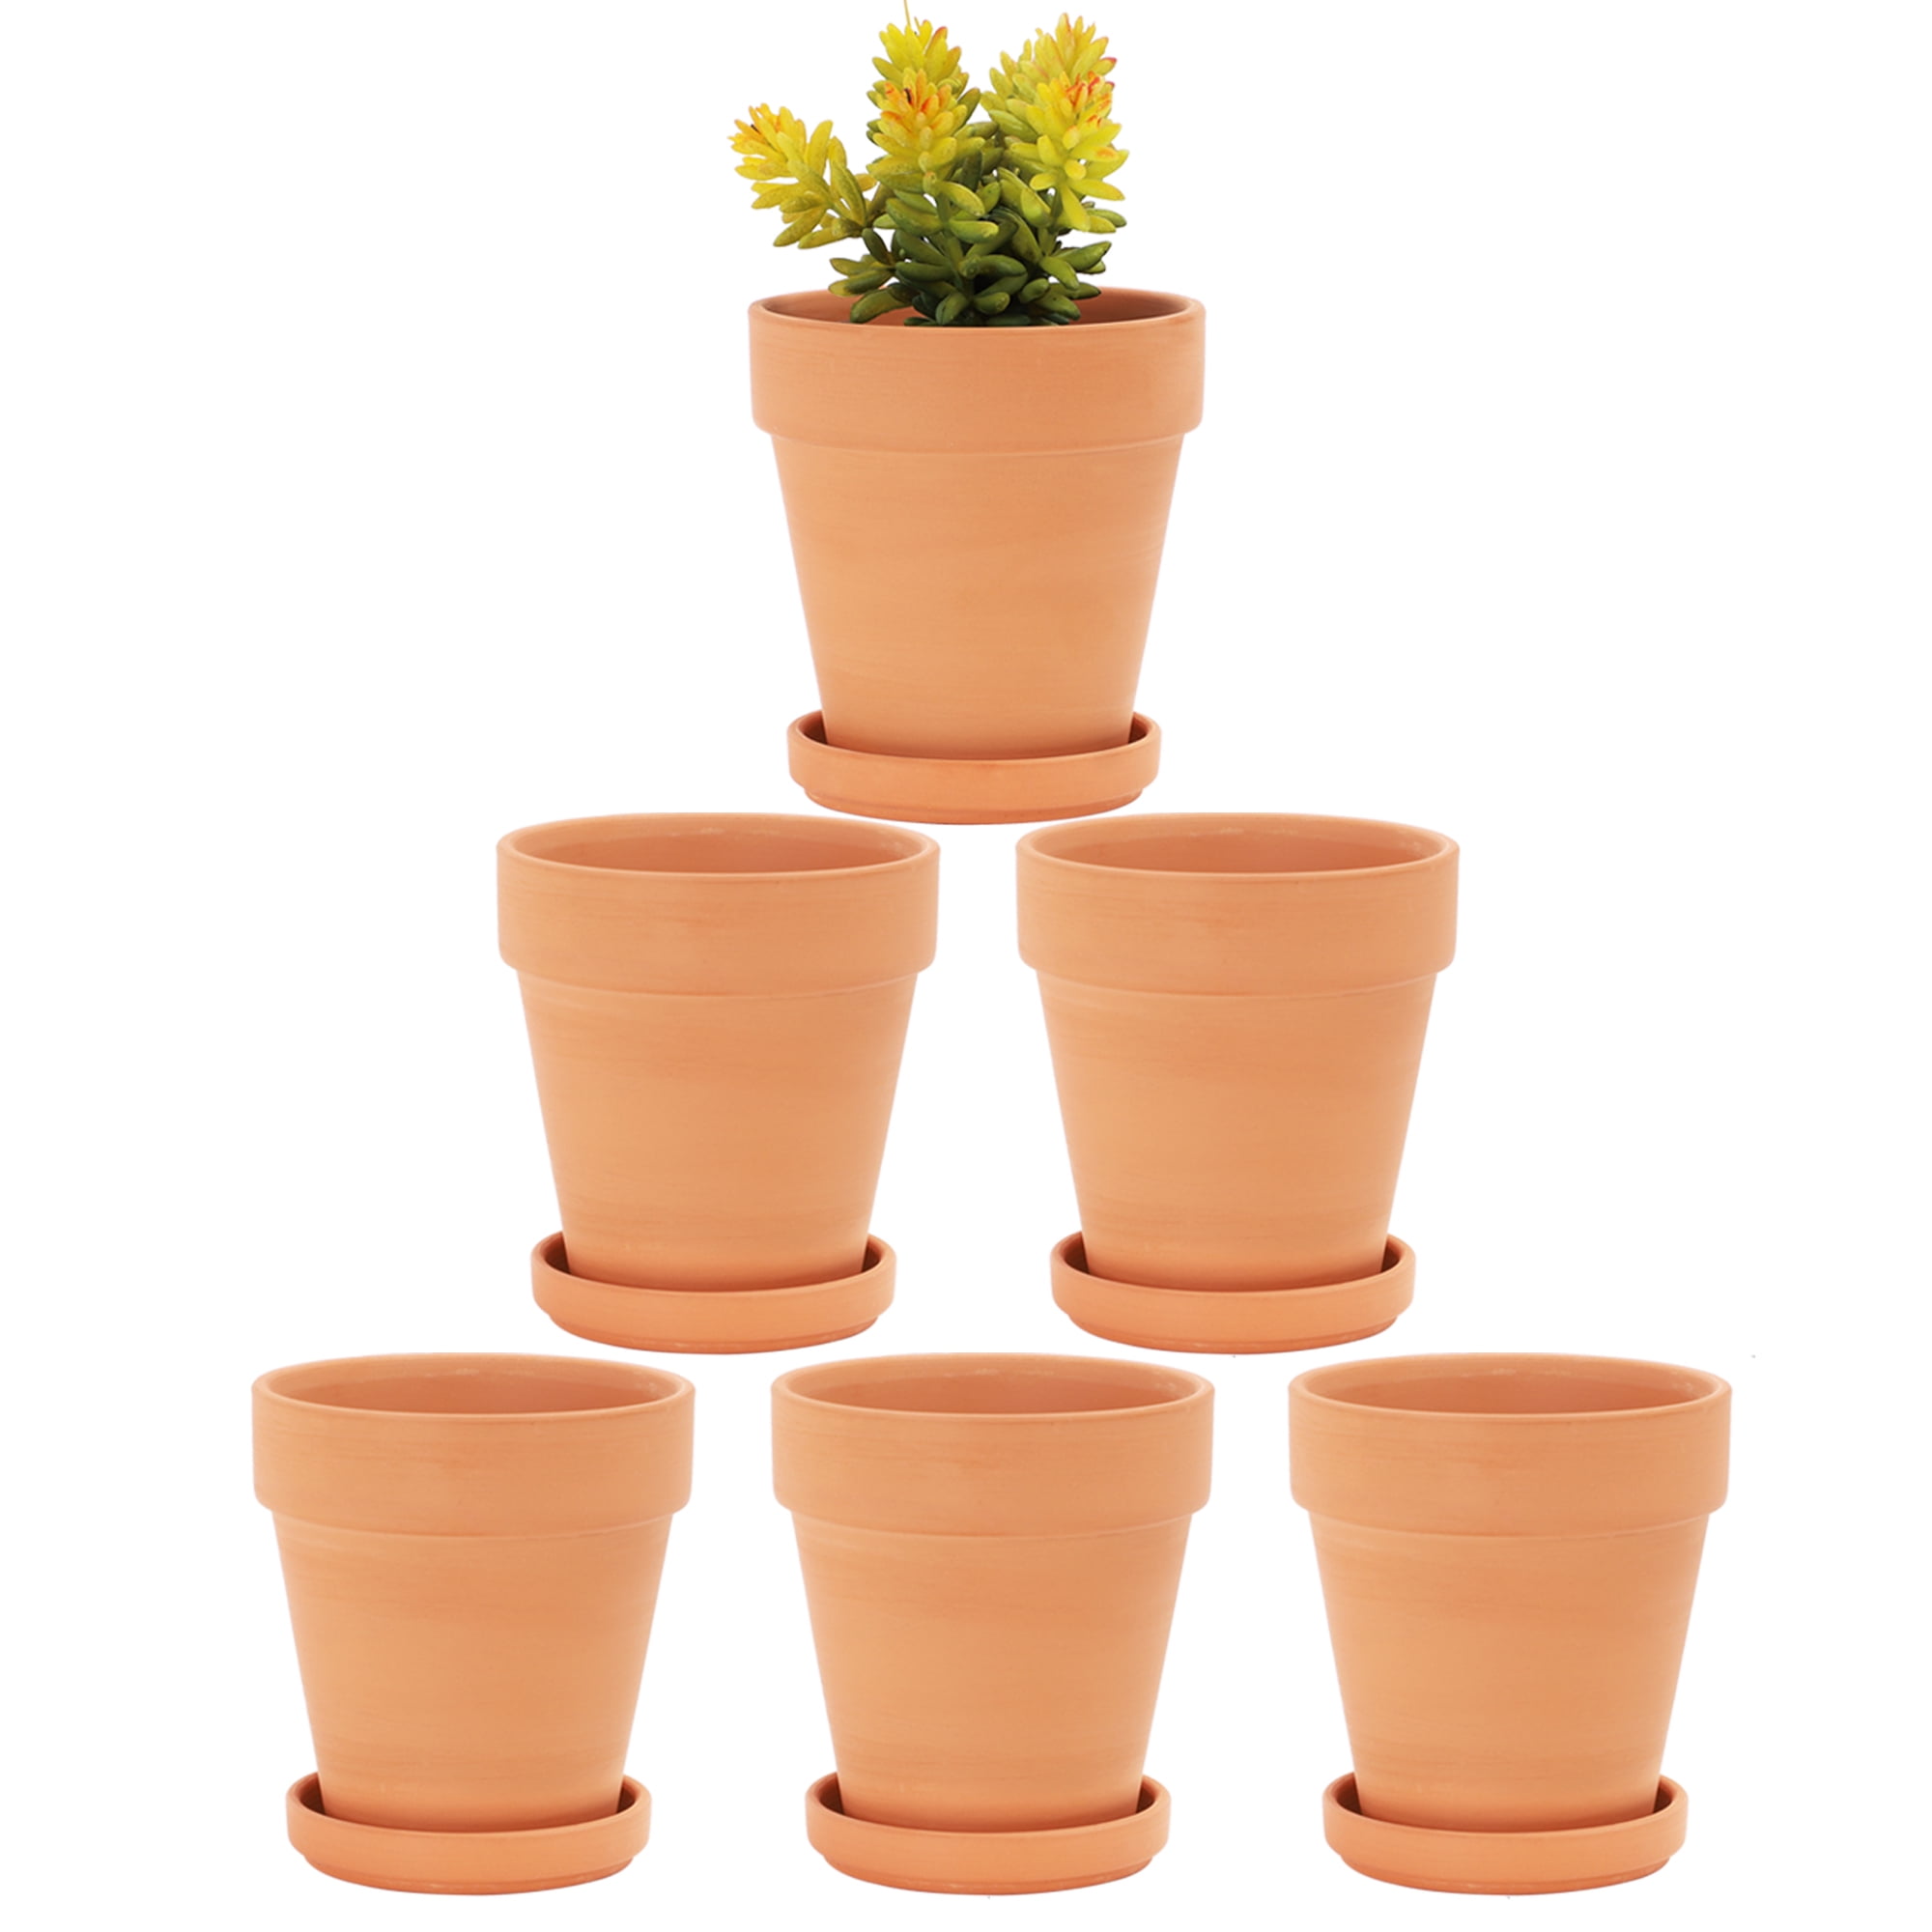 Adorable Flower Planter Pot 4 Inch Ceramic Plant Pots with Drainage Holes 